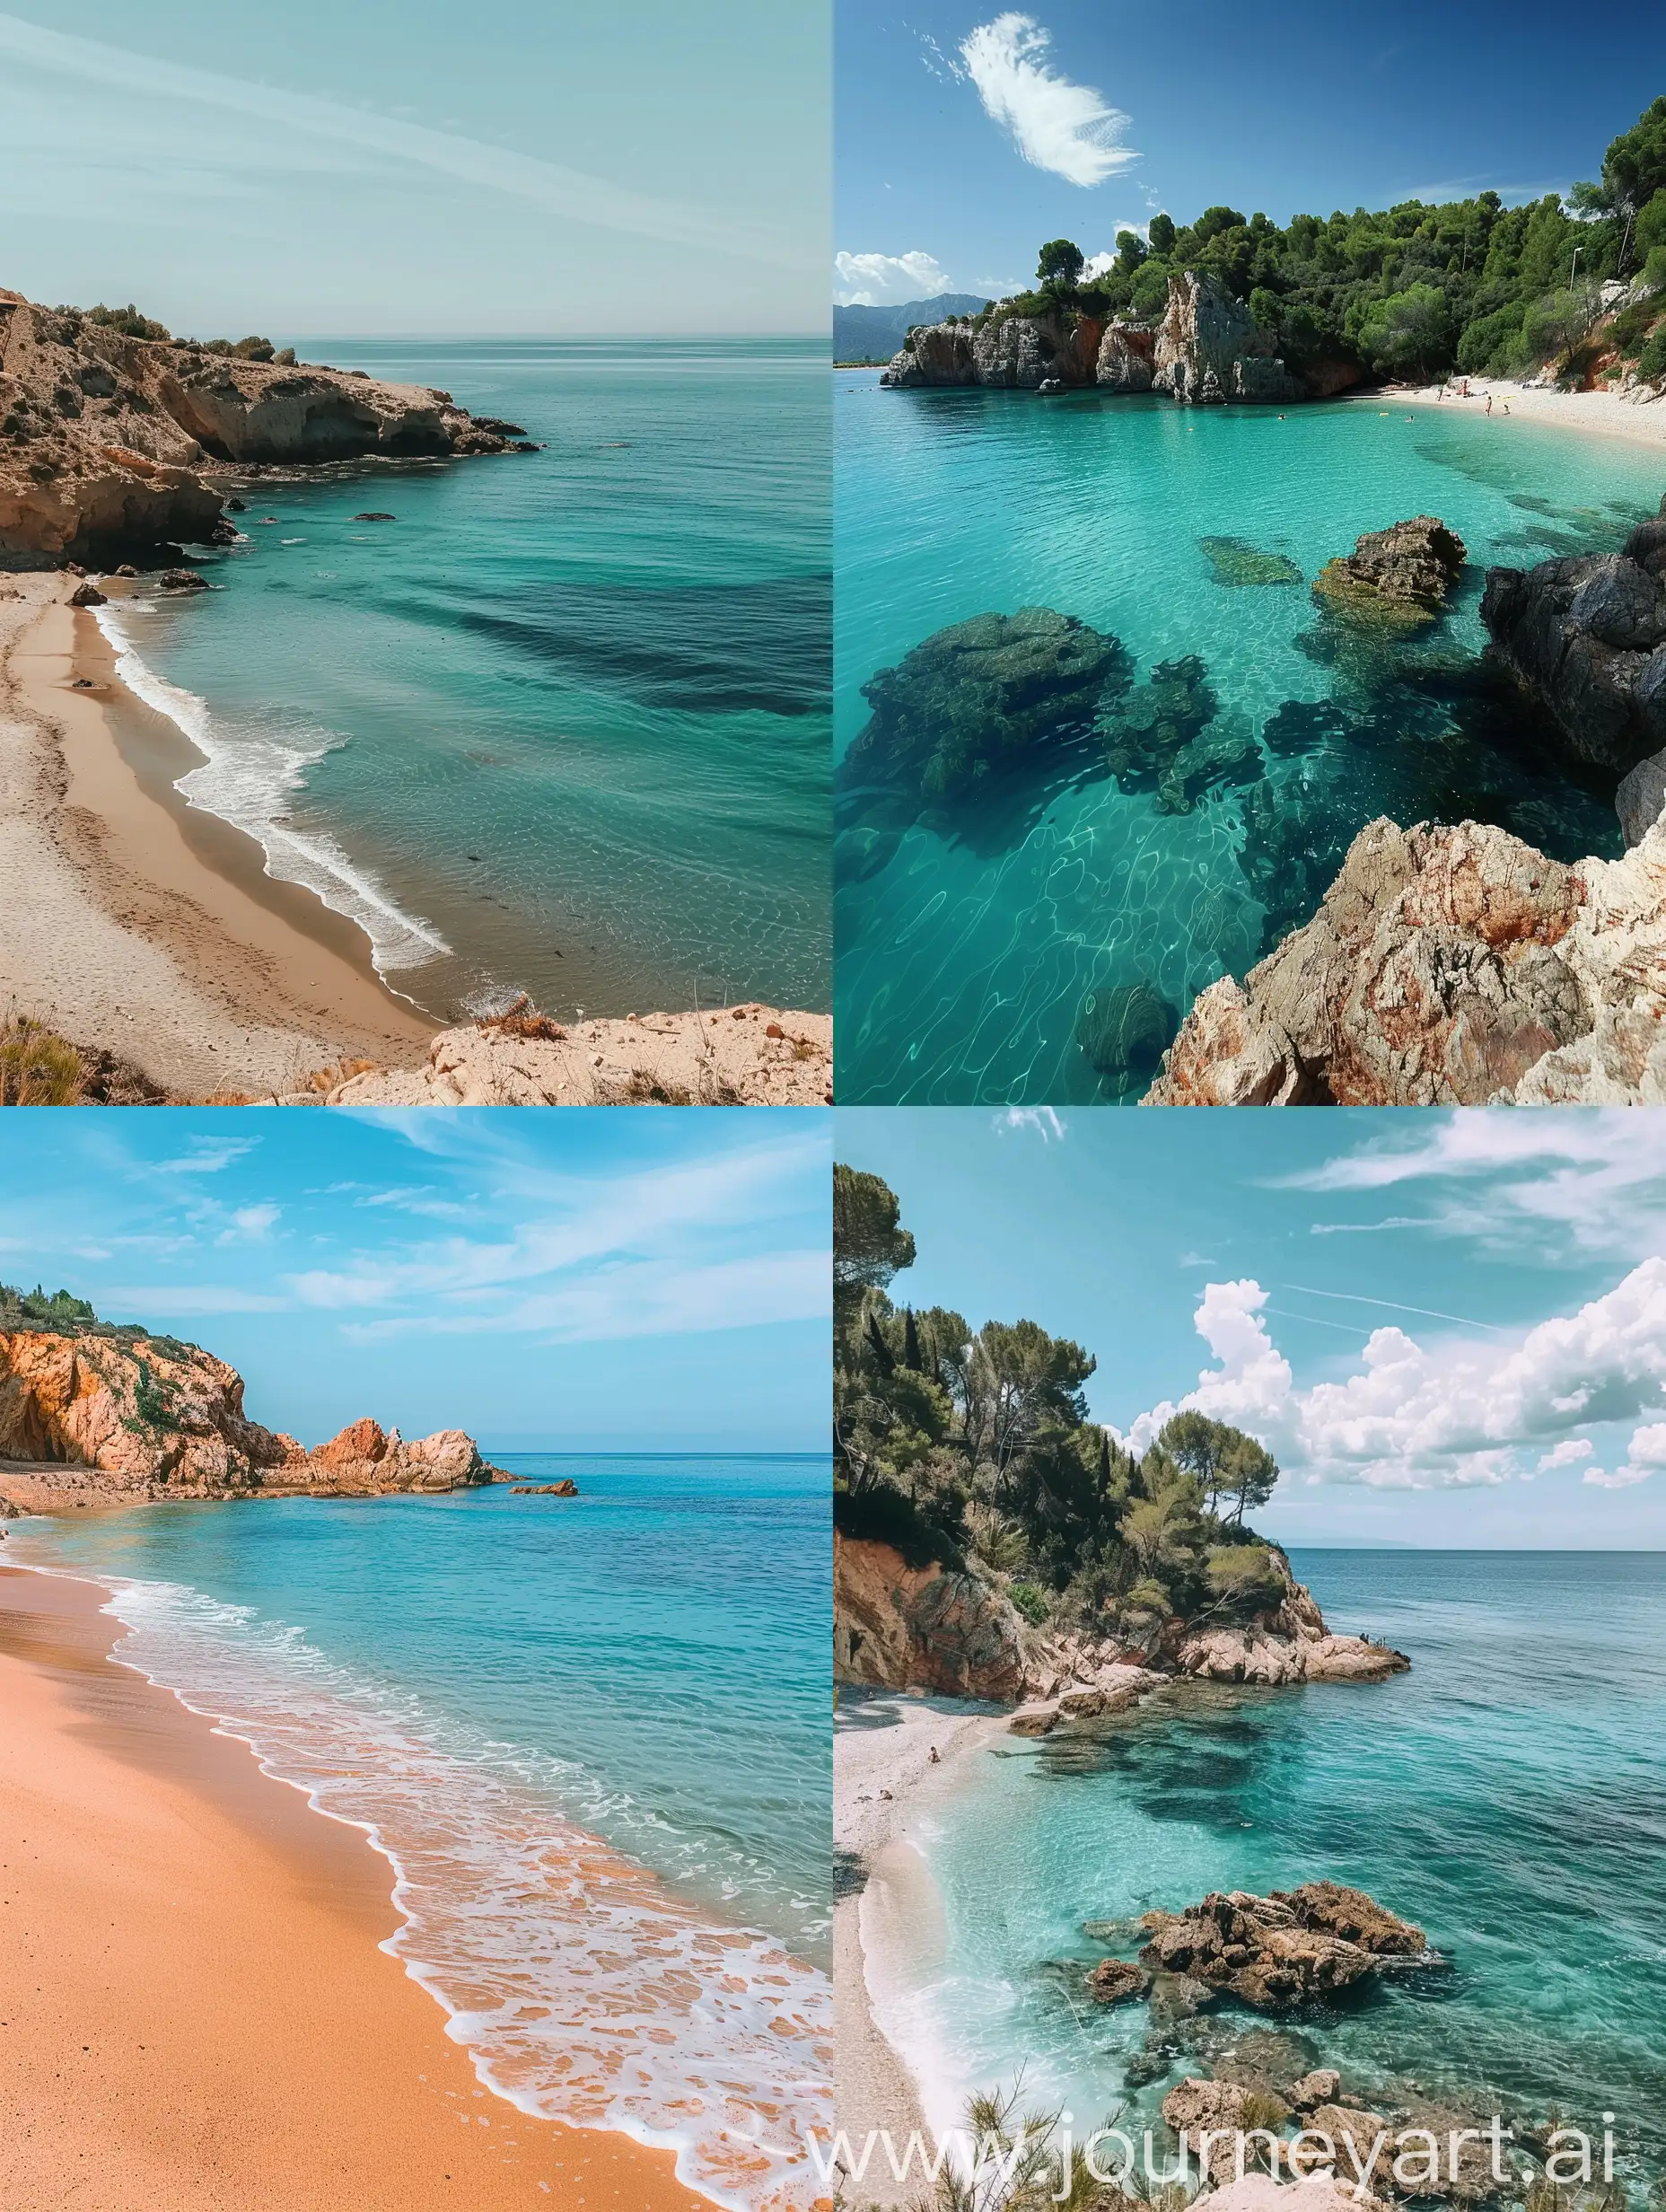 Ein perfekter spanischer Strand

